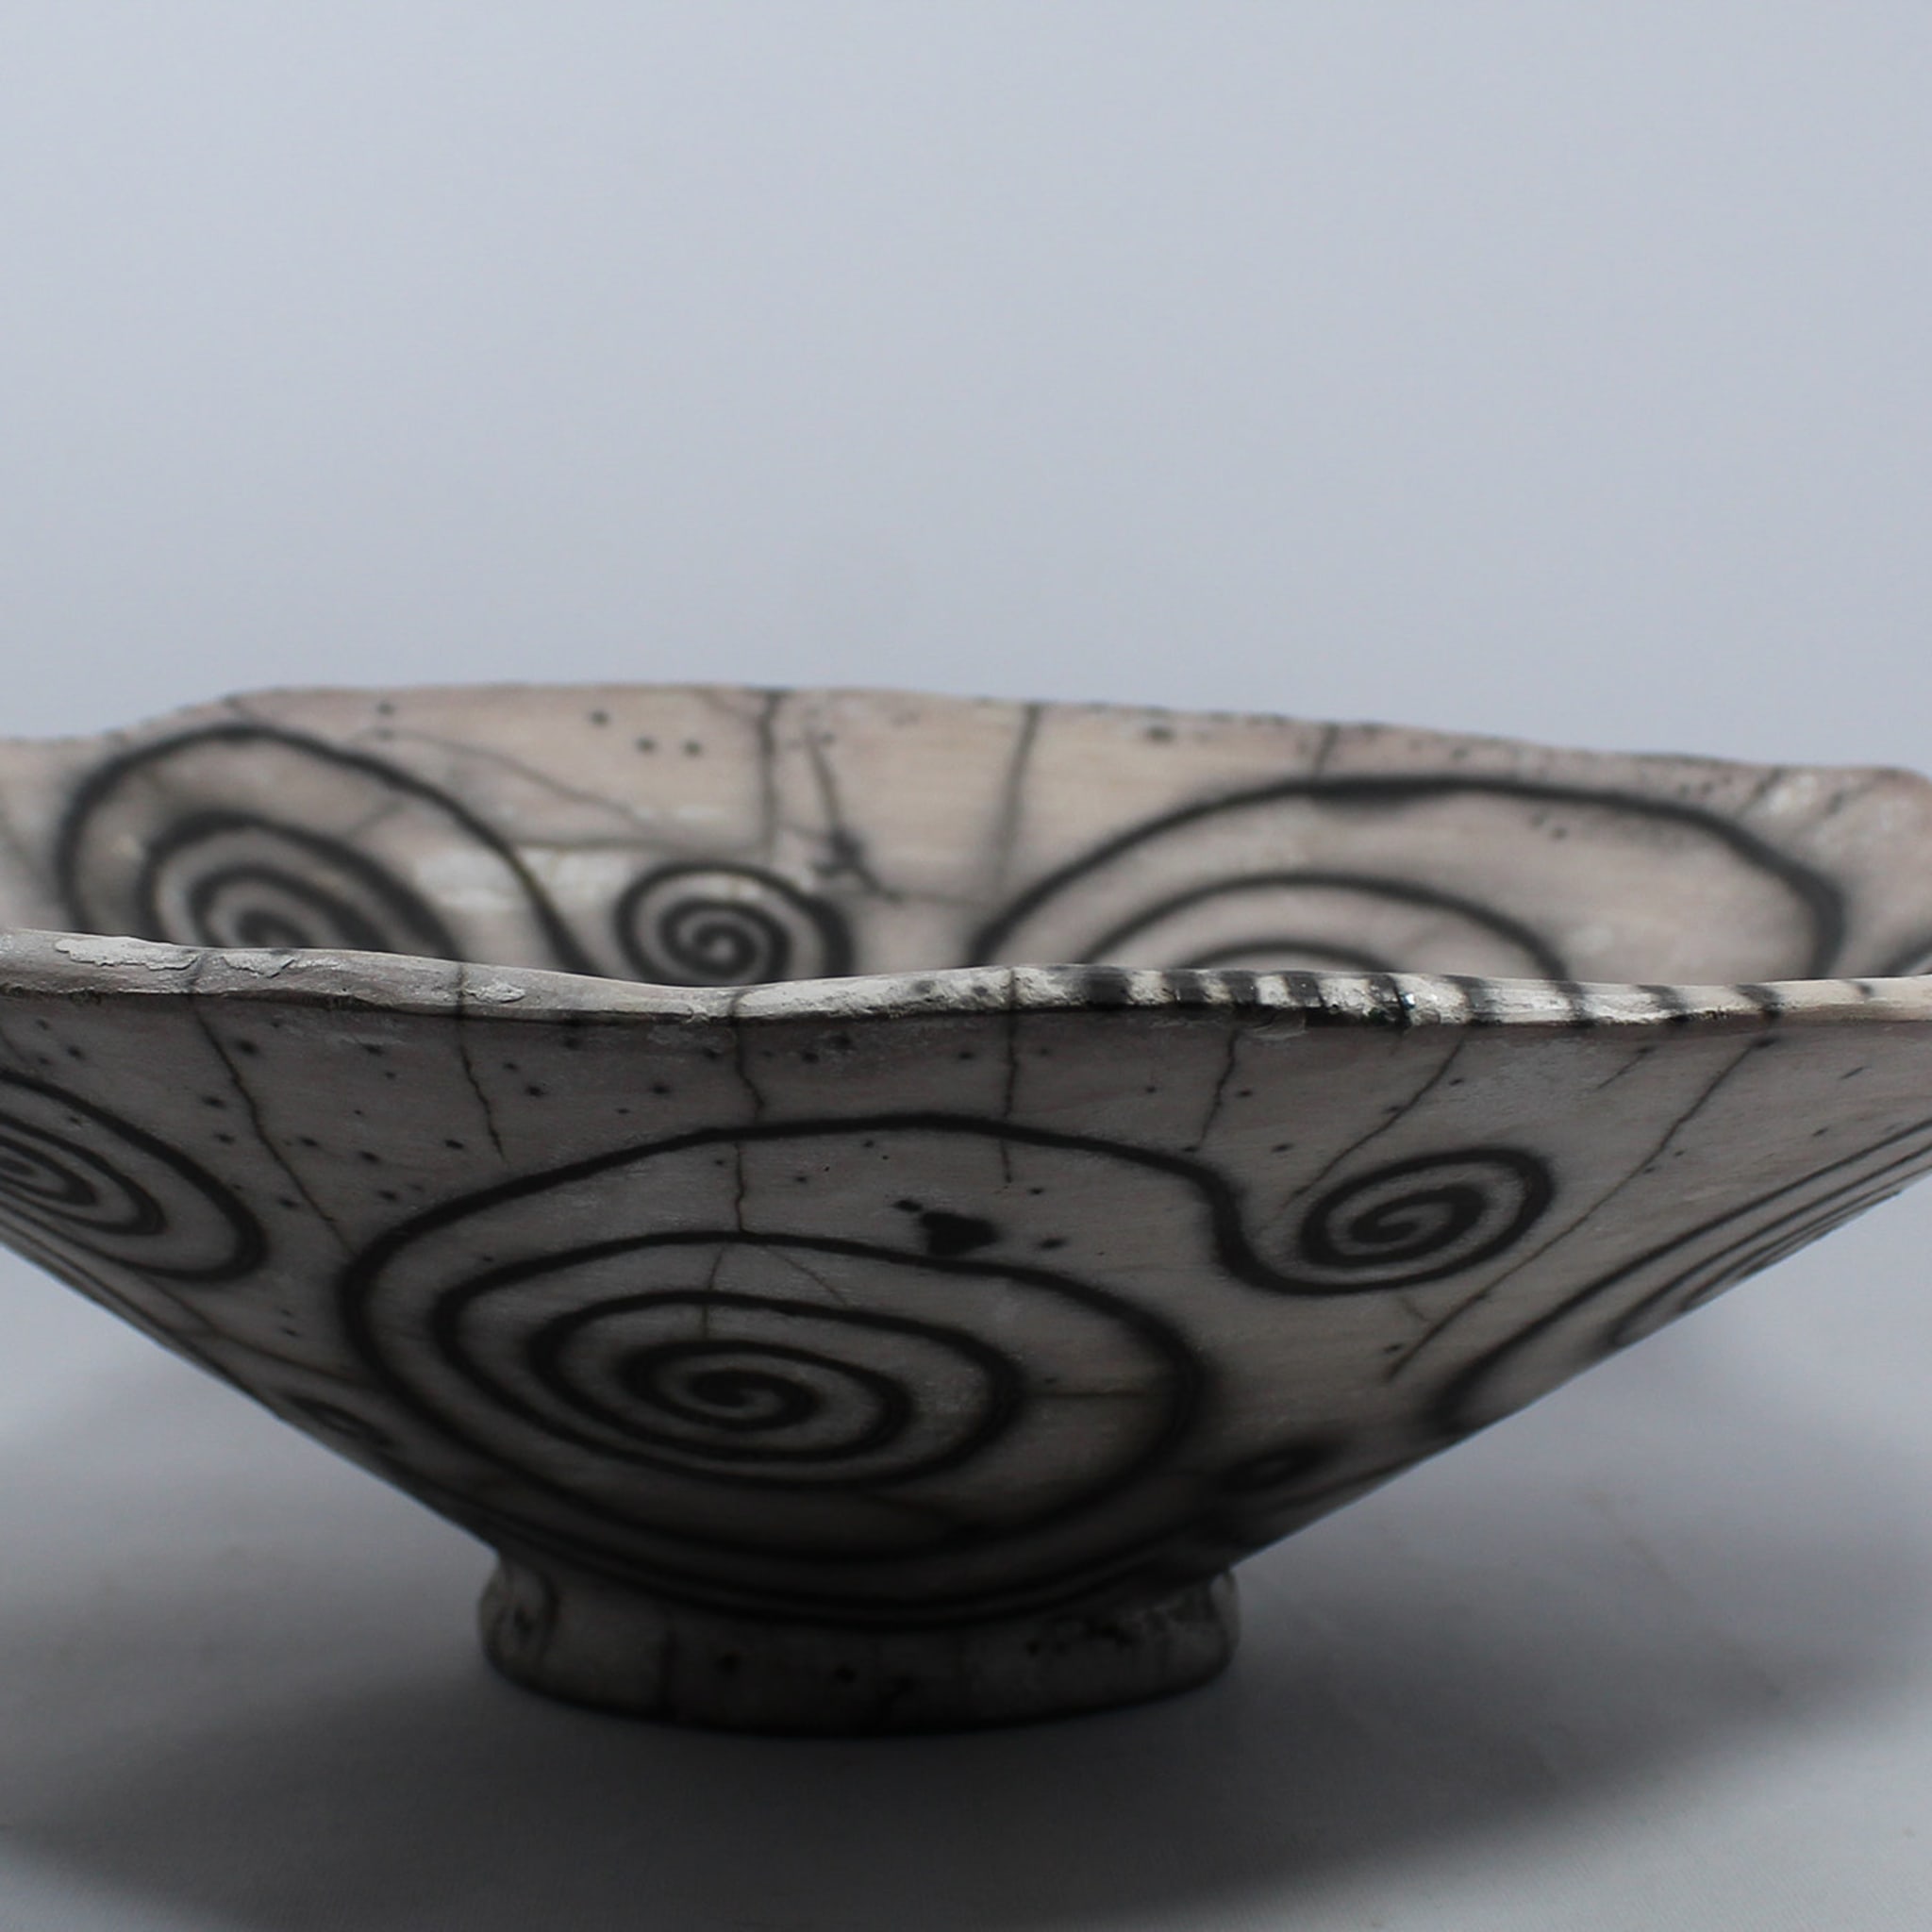 David ceramic bowl - Alternative view 1